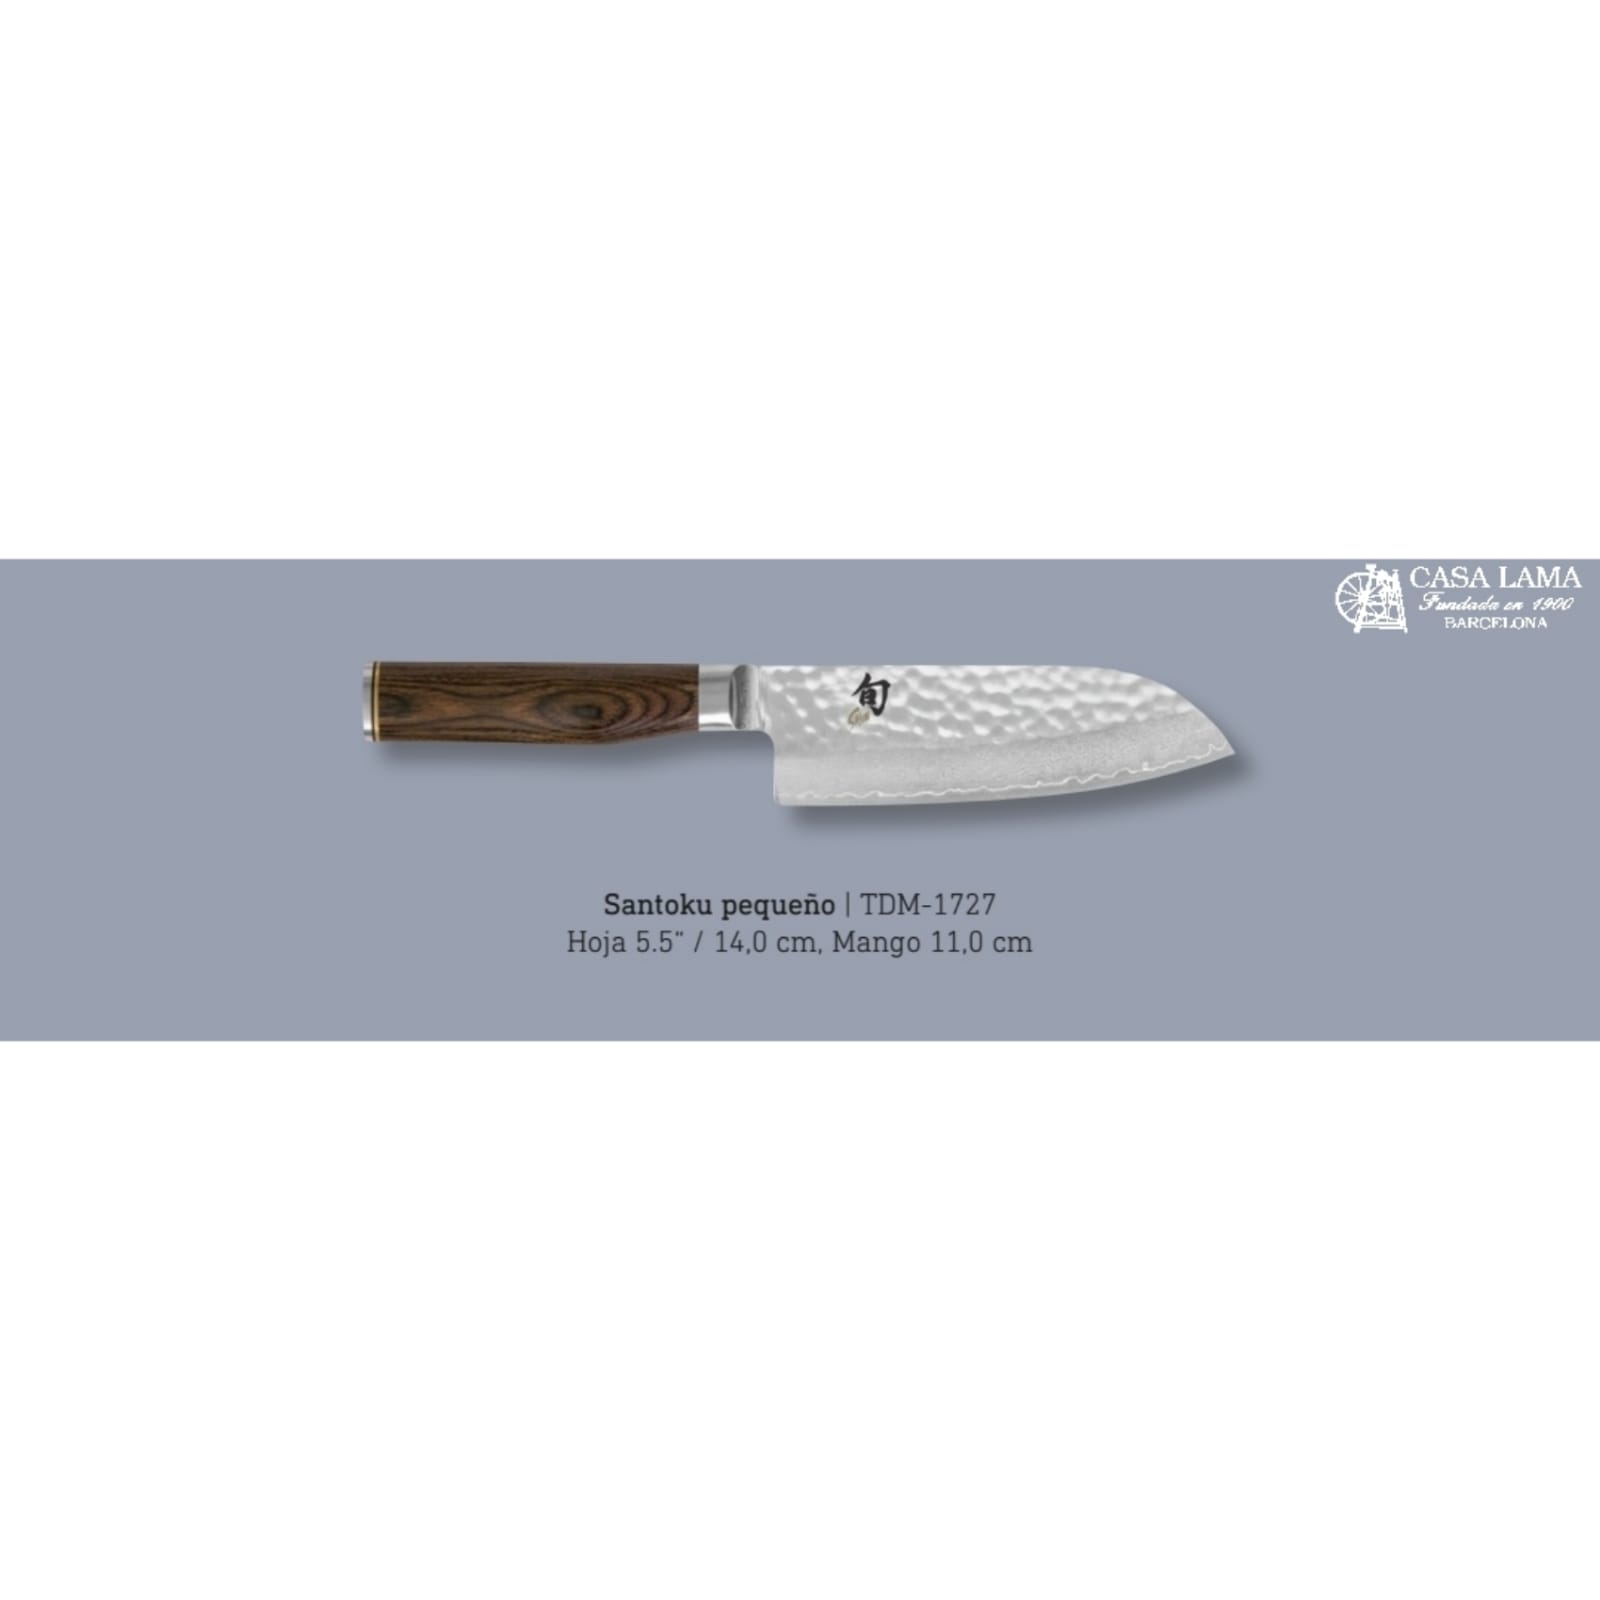 compre online al mejor precios el cuchillokai shun premier santoku 14cm